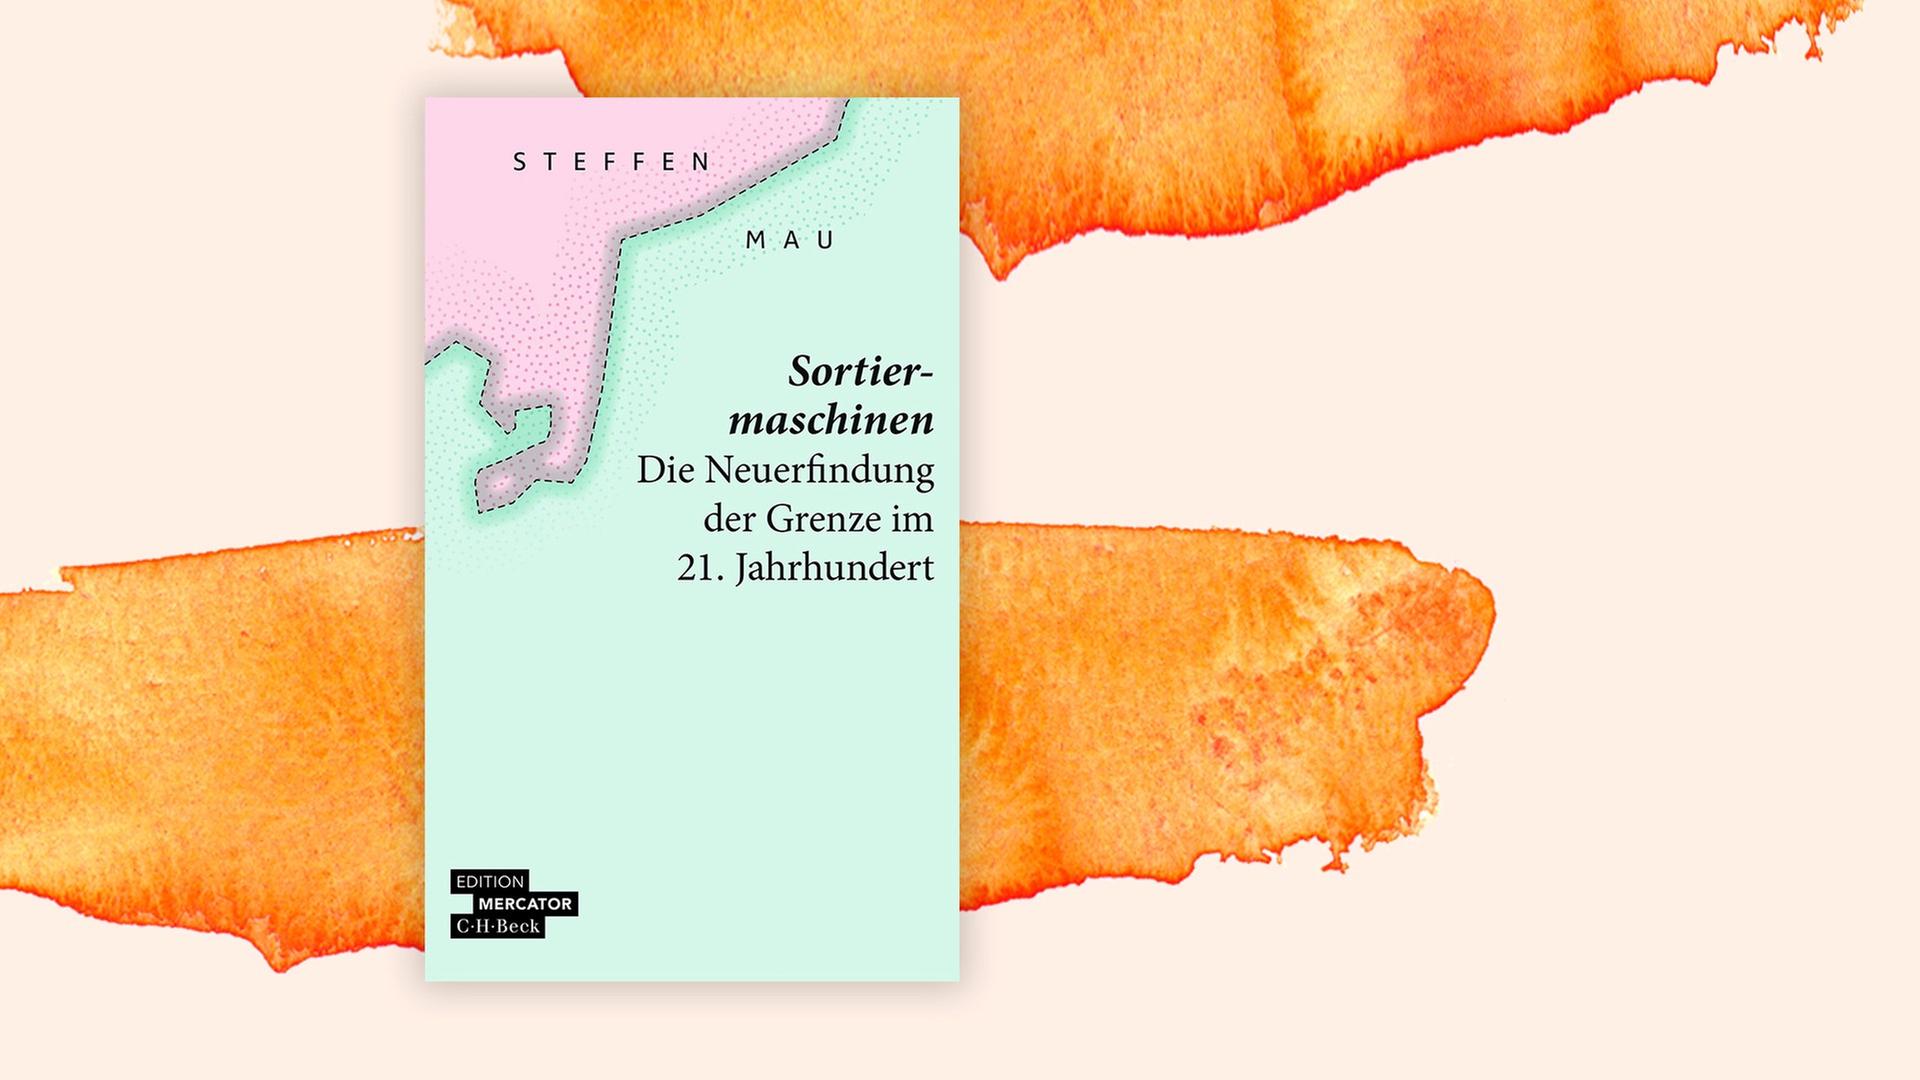 Das Cover des Buches von Steffen Mau, Sortiermaschinen. Die Neuerfindung der Grenze im 21. jahrhundert", auf orange-weißem Grund